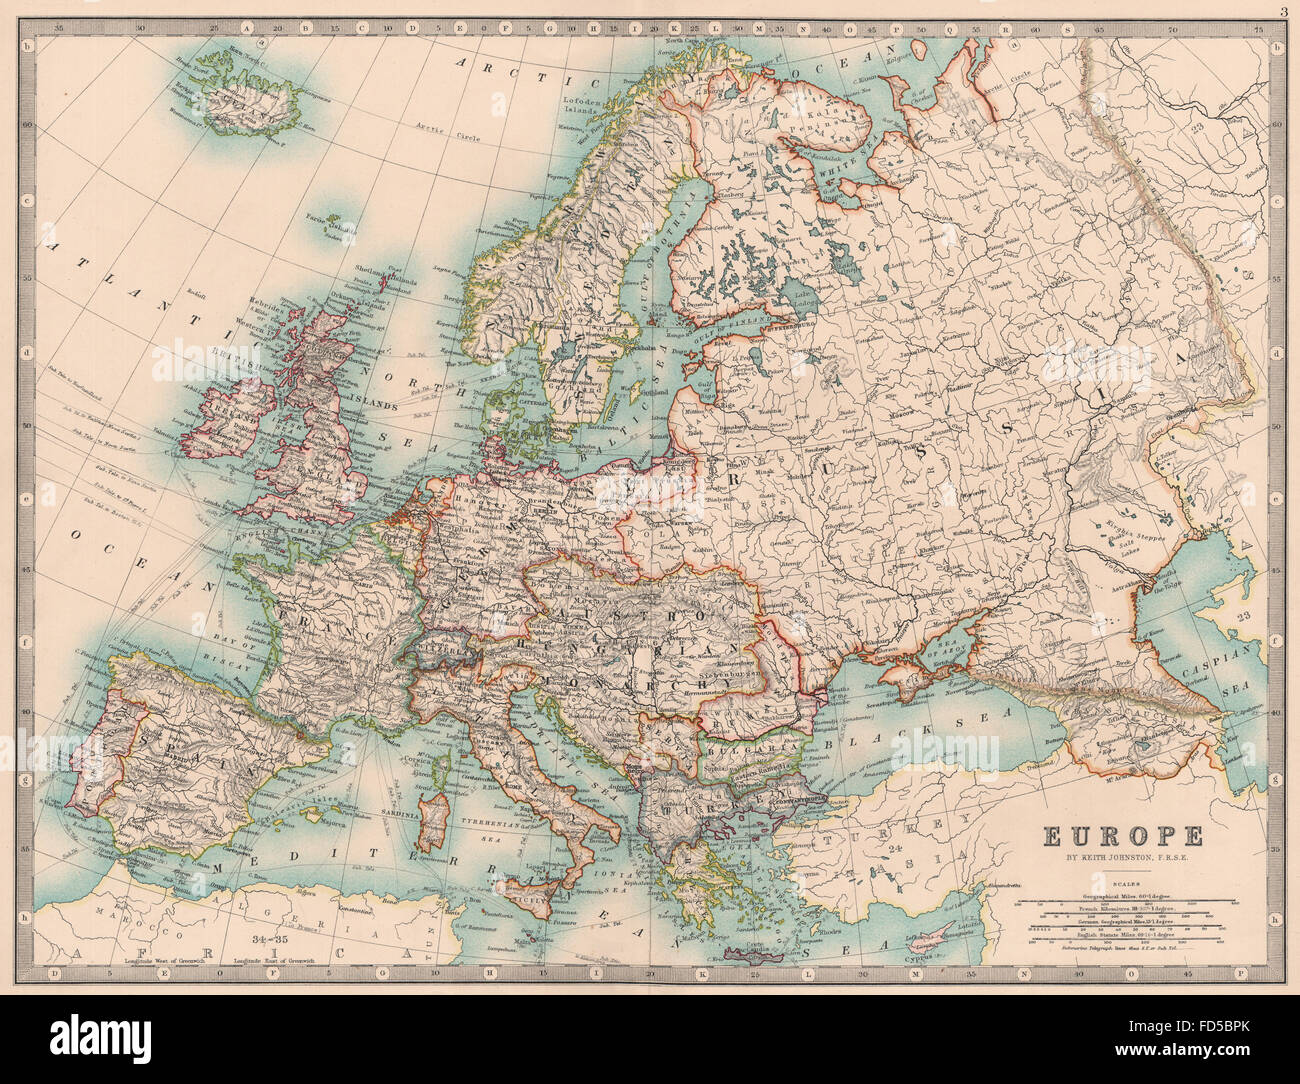 Europa: politische. Österreich-ungarischen Monarchie. Schiffsrouten. JOHNSTON 1906 Karte Stockfoto